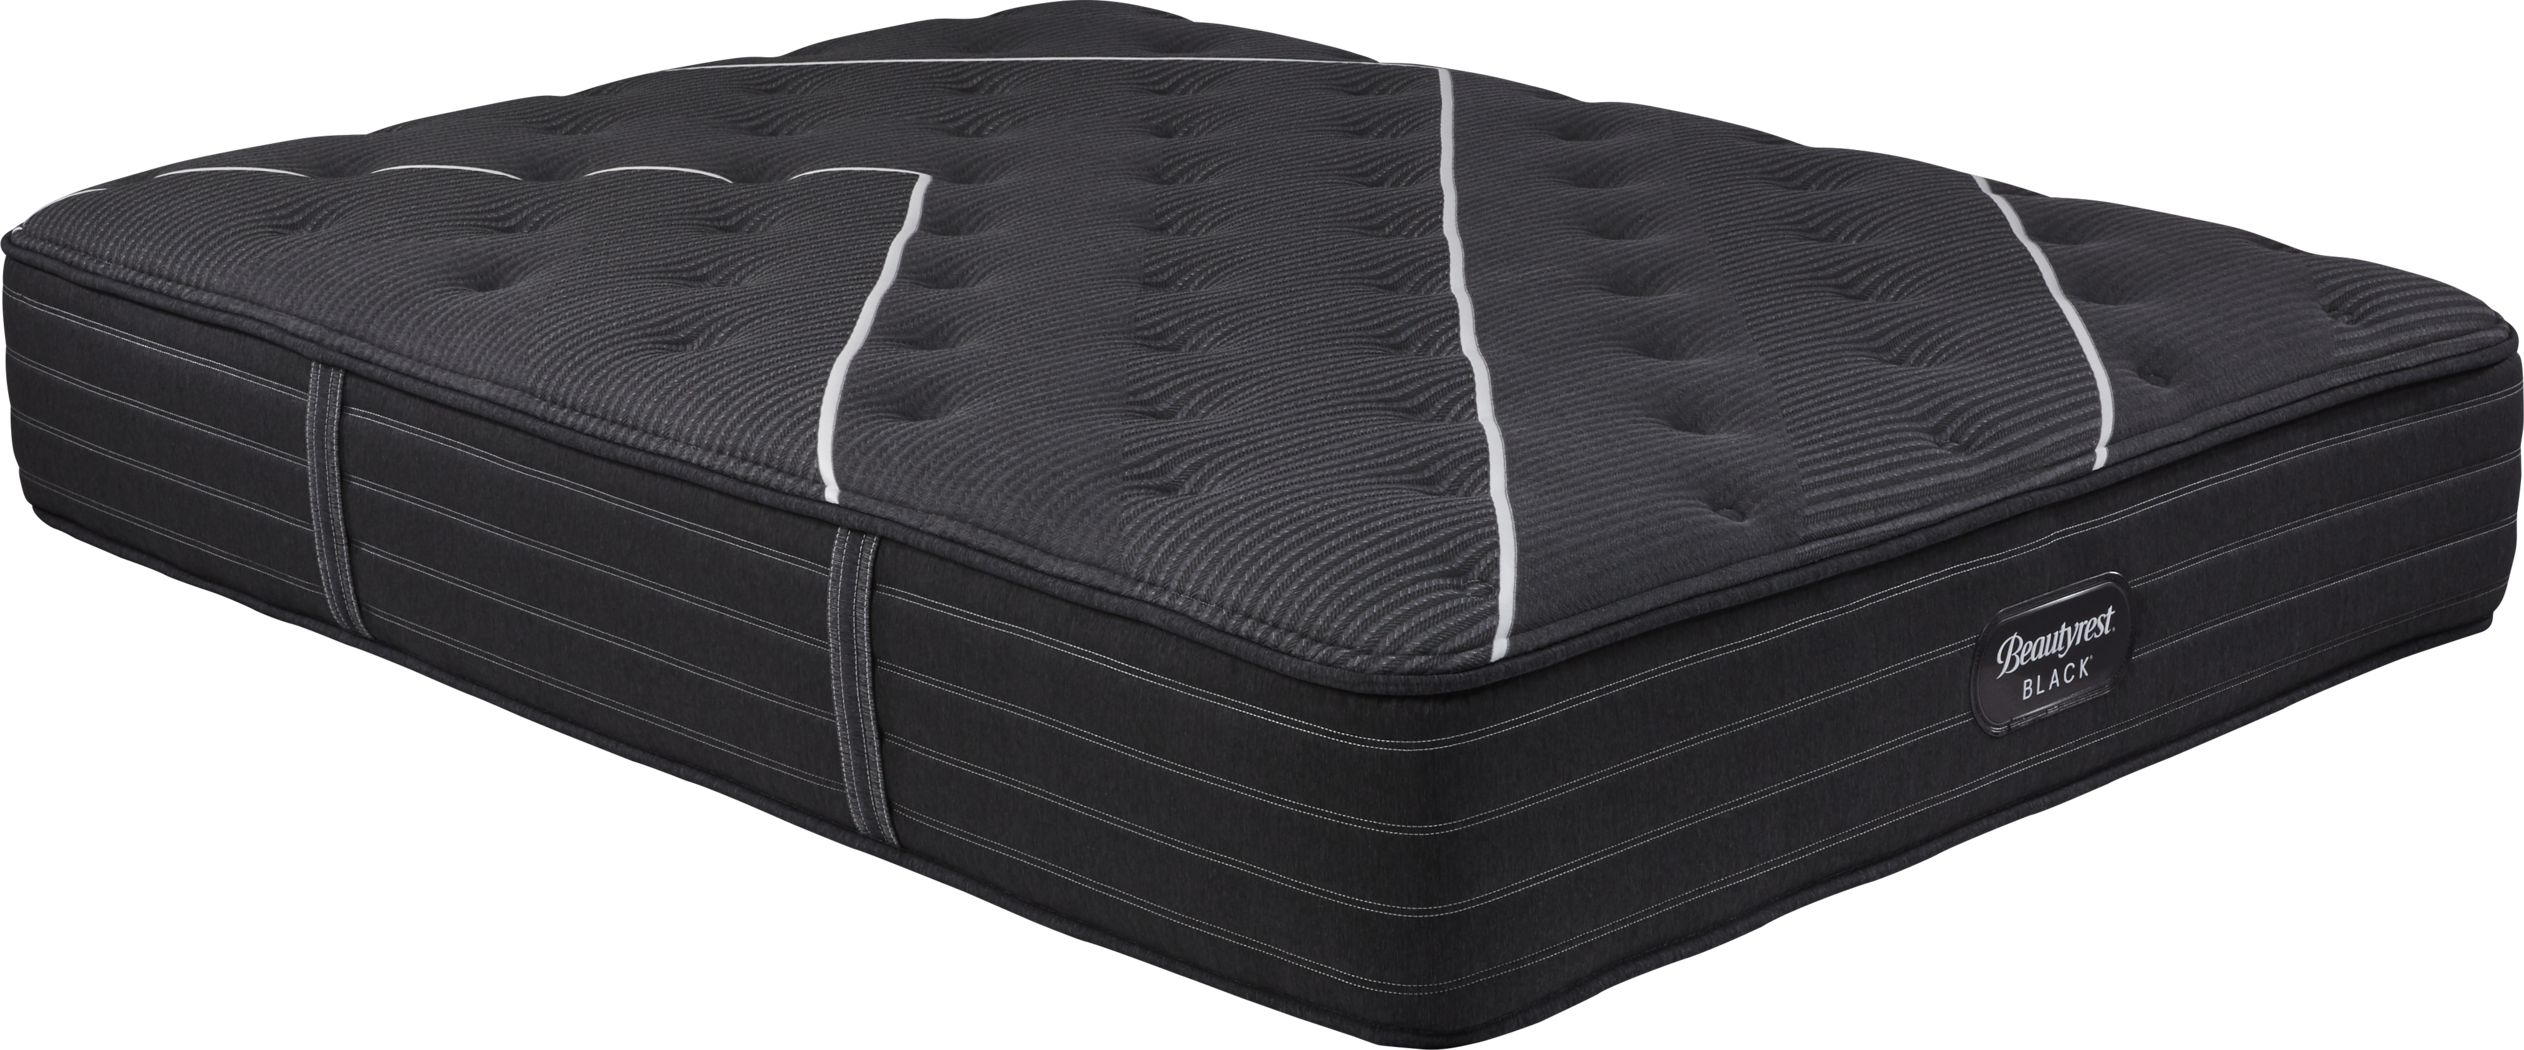 beauty rest black c class mattress firm